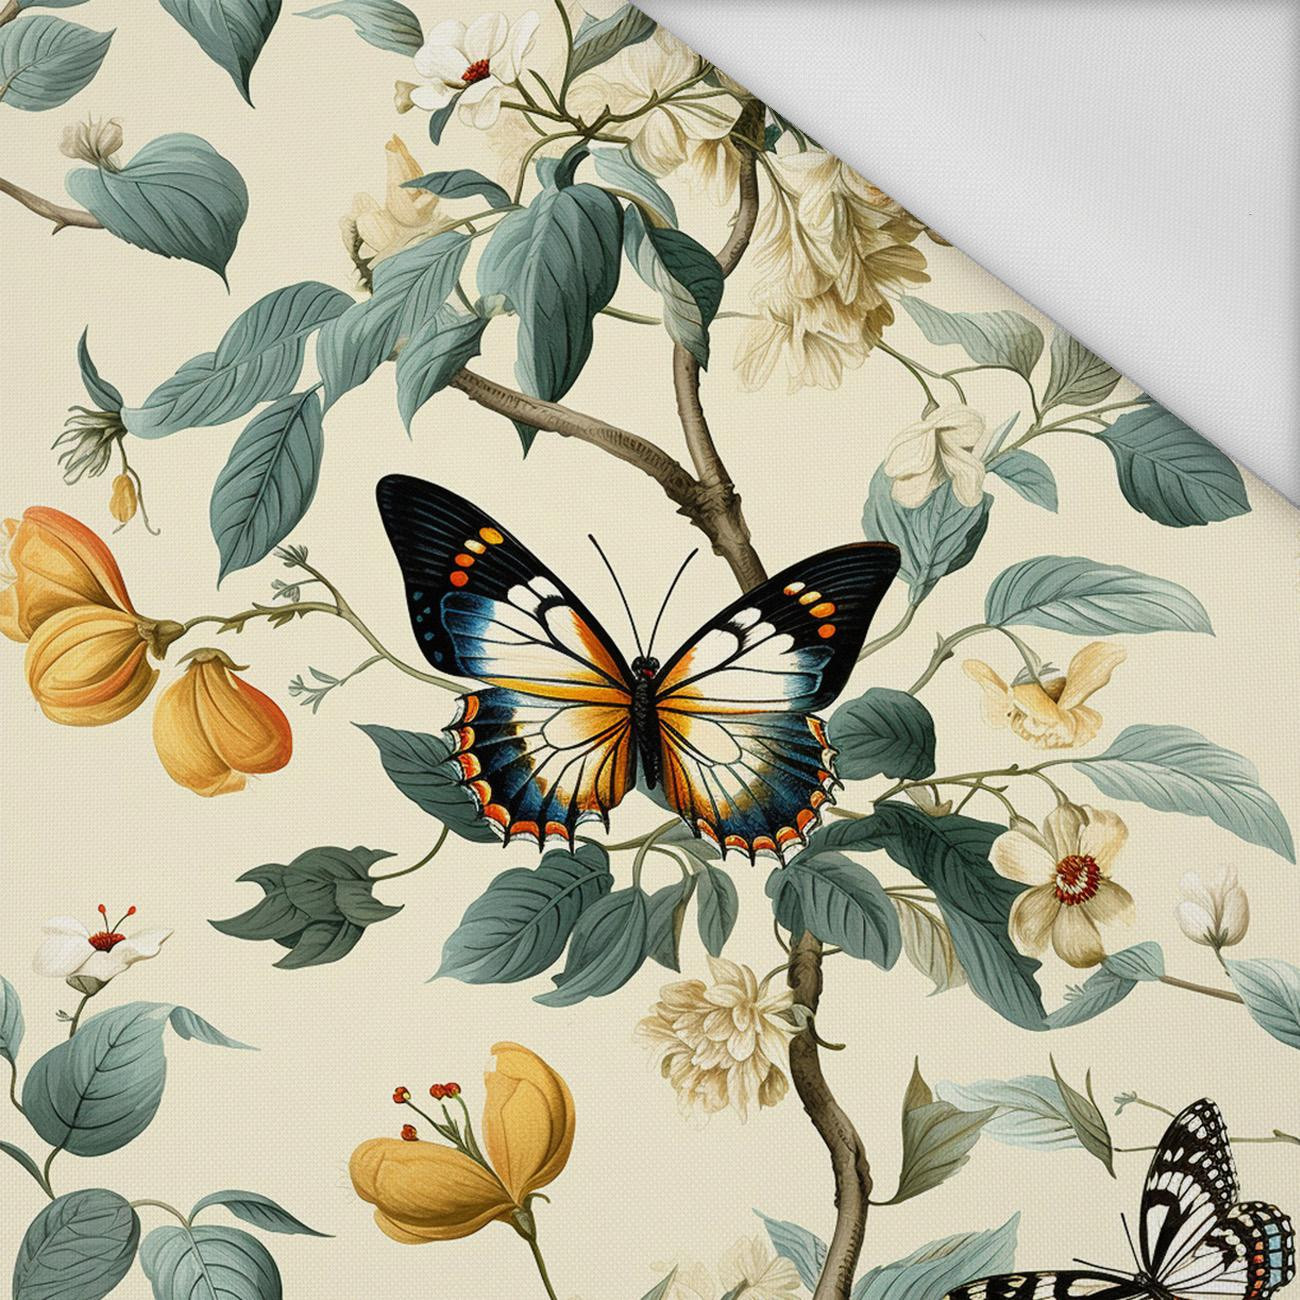 Butterfly & Flowers wz.2 - Waterproof woven fabric